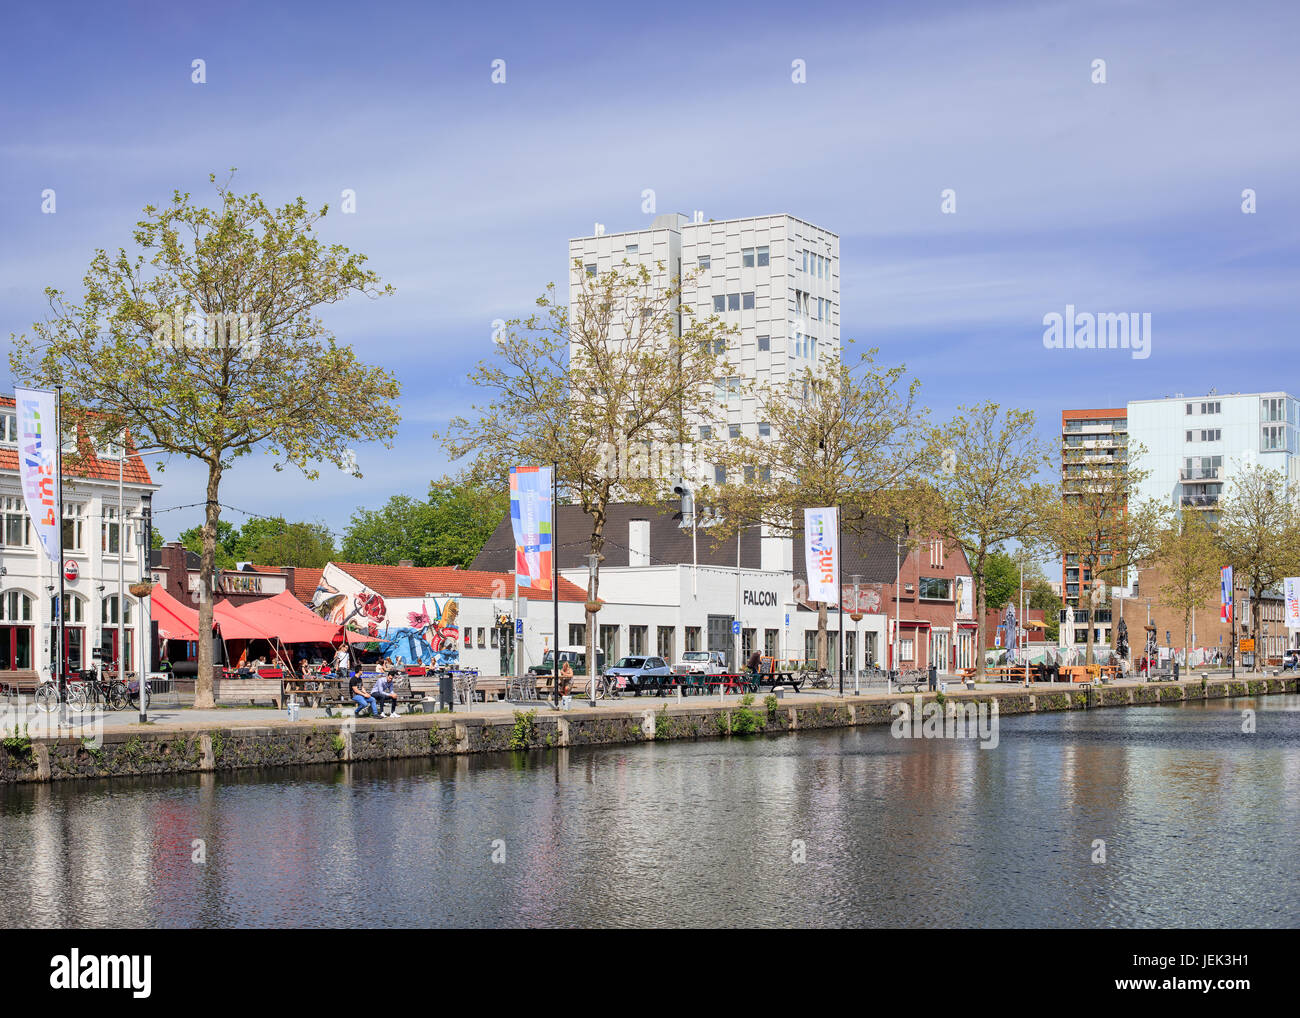 Pie harbour paysages, une vaste zone adjacente au centre-ville de Tilburg. La zone est élaborée à partir d'un ancien port industriel. Banque D'Images